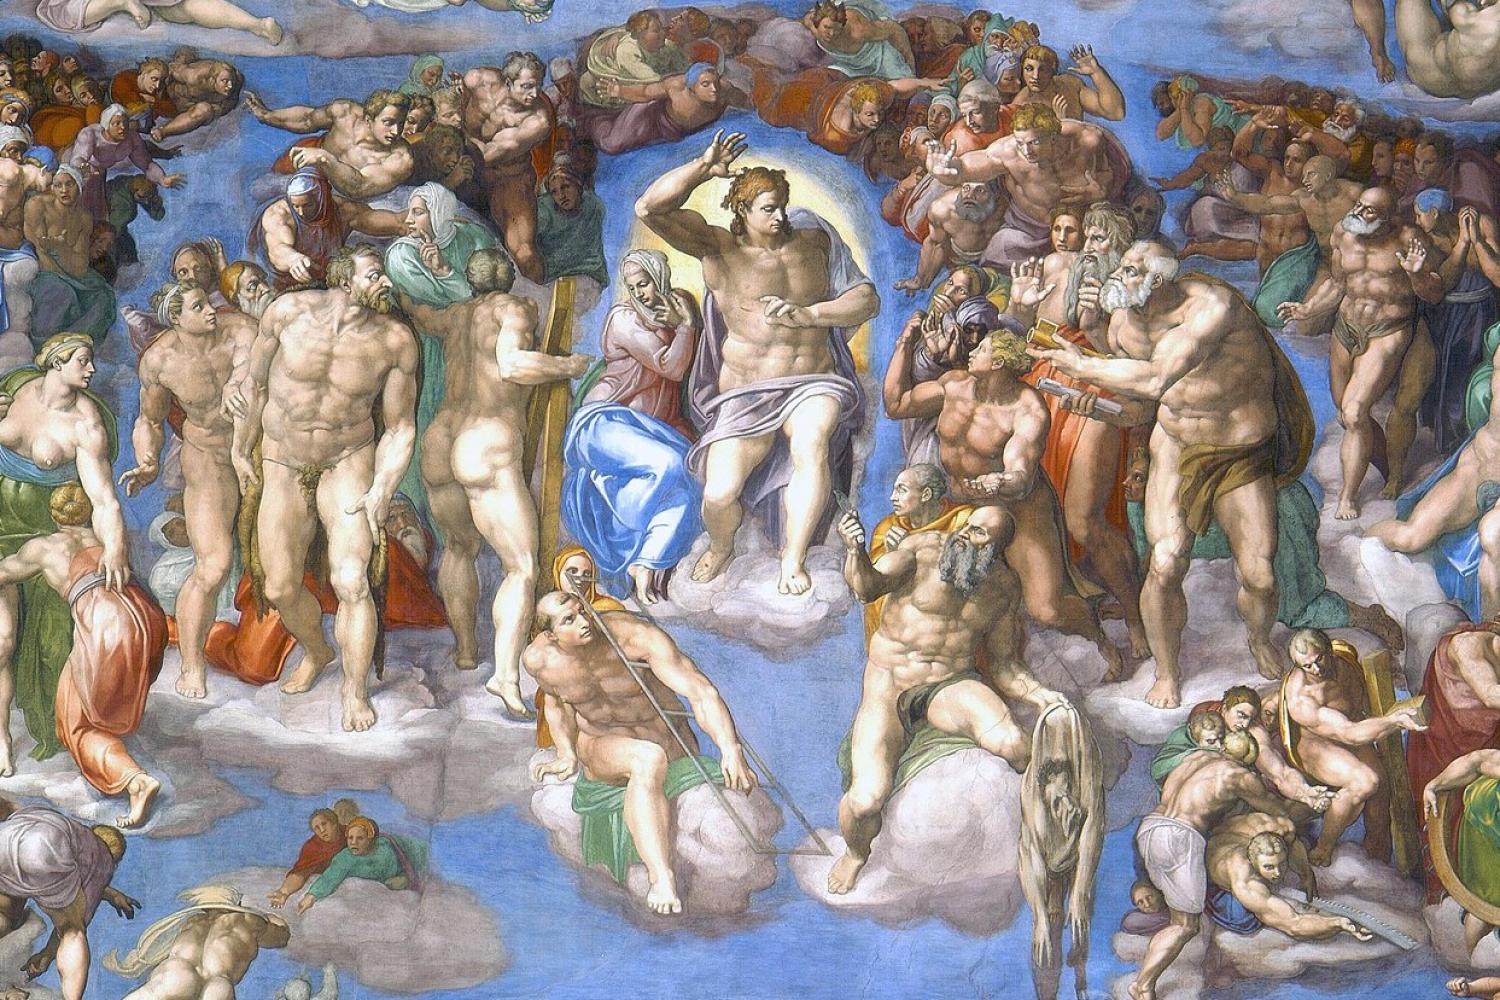 Sistine Chapel "Last Judgment"